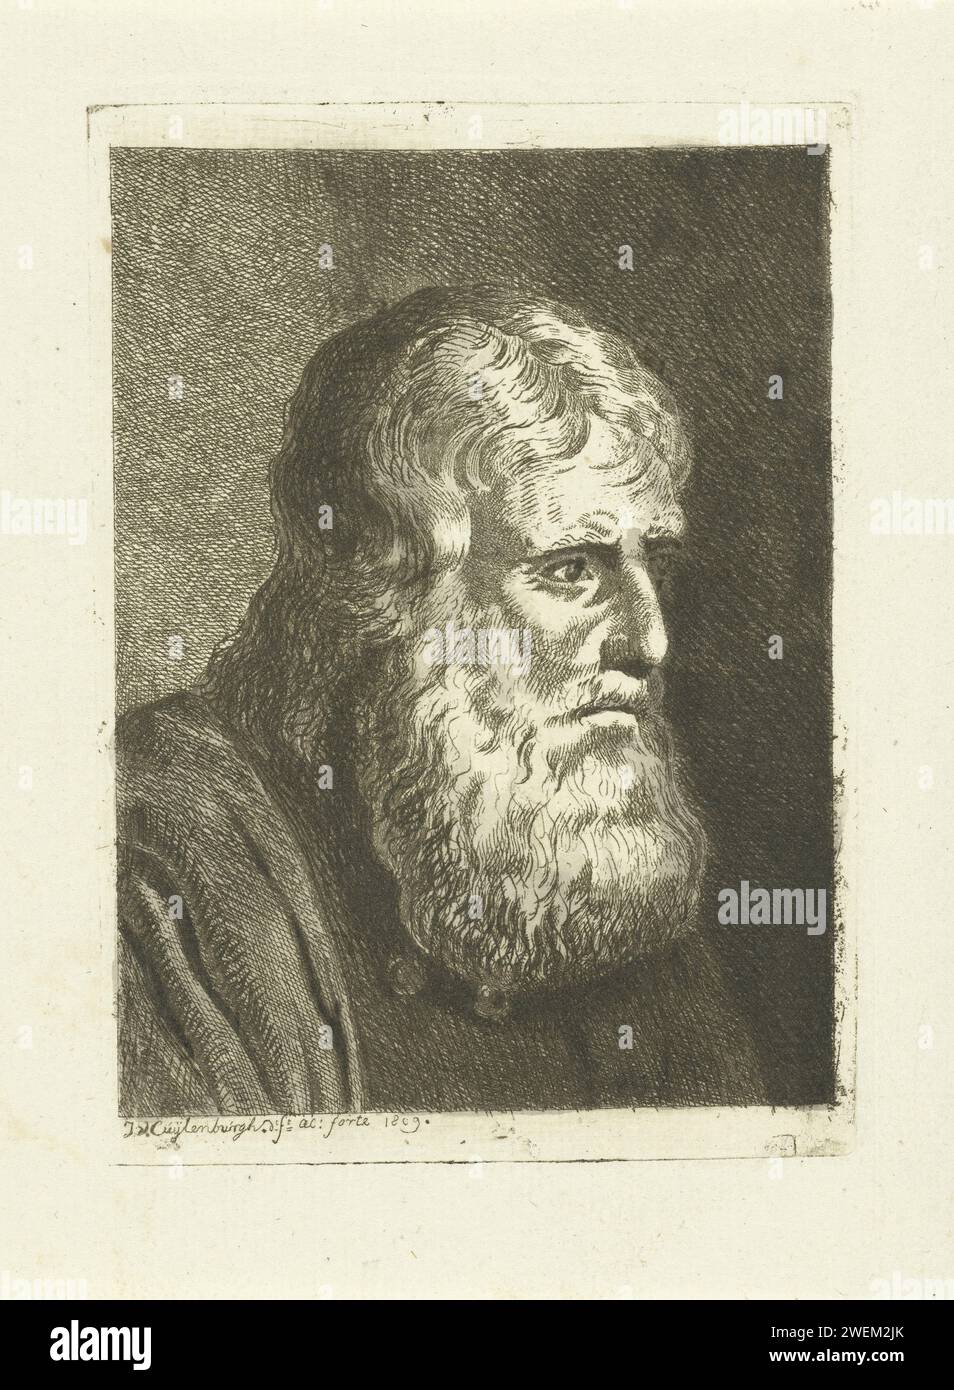 Ritratto dell'uomo con la barba, Johannes van Cuylenburgh, barba incisa su carta del 1809 Foto Stock